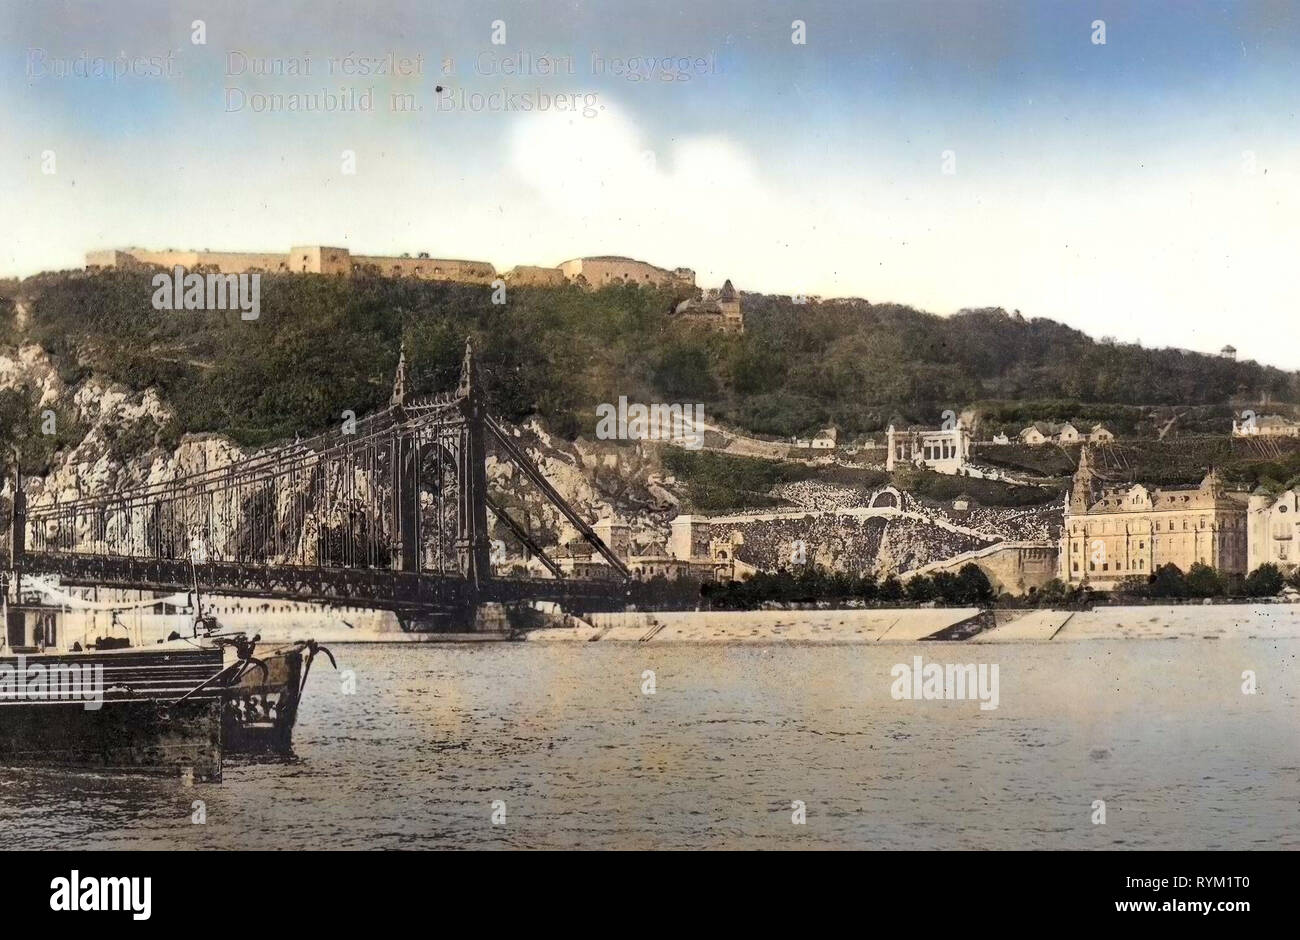 Des photographies historiques de la colline de Gellért, images historiques du pont Elisabeth, Budapest, 1906, Donaubild mit Blocksberg, Hongrie Banque D'Images